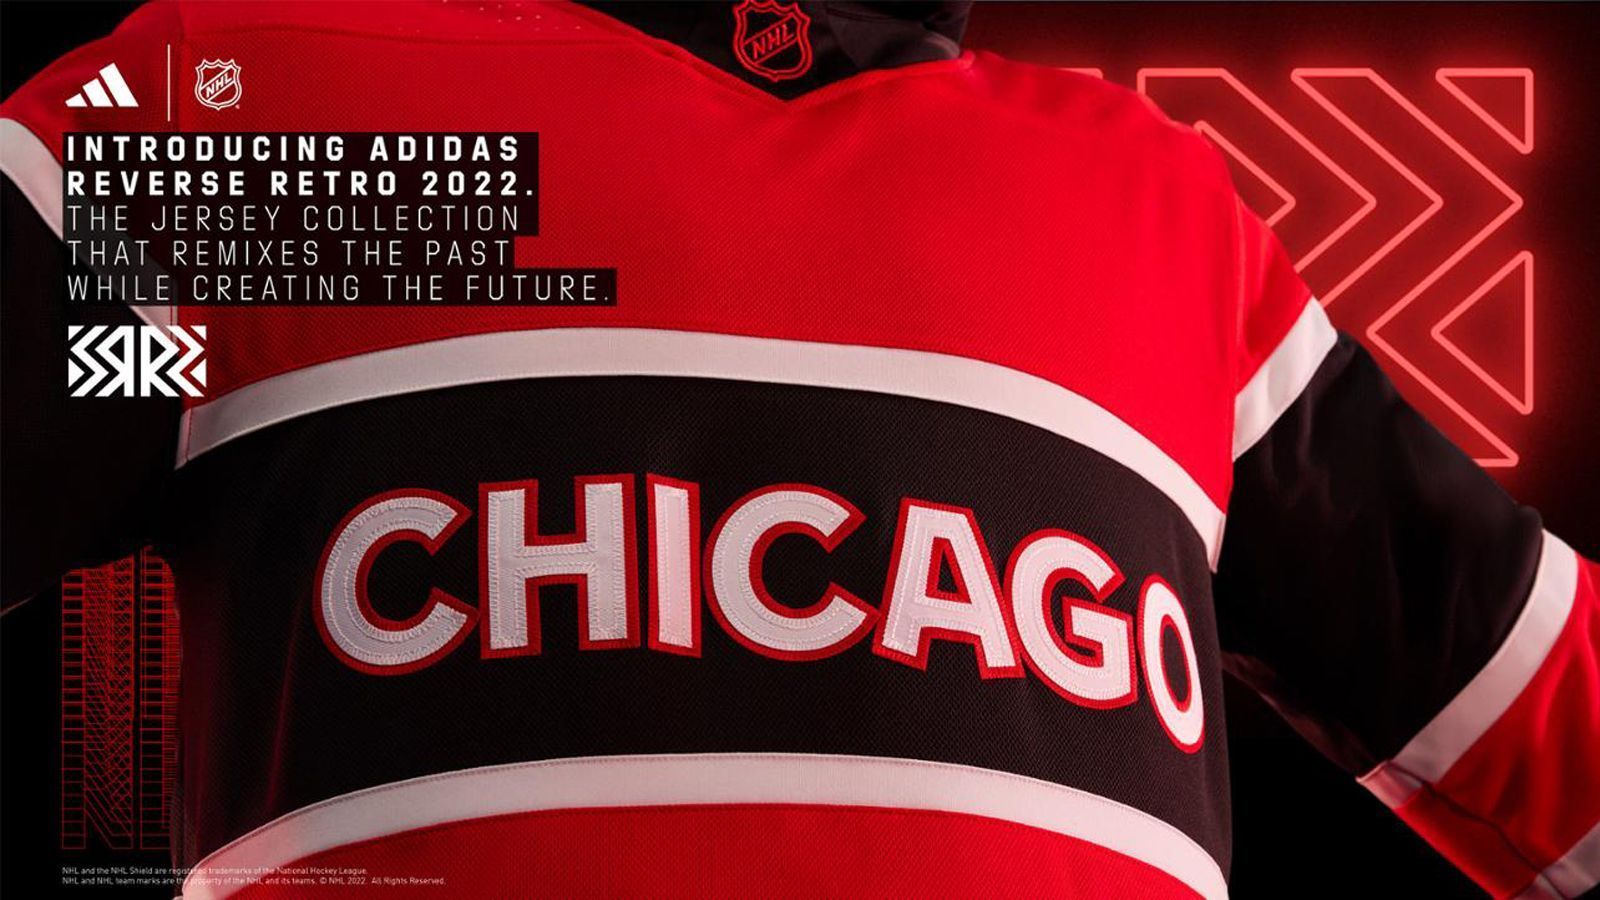 
                <strong>Chicago Blackhawks</strong><br>
                Das Trikot der Chicago Blackhawks von 1983 ist eine wörtliche Interpretation von "Reverse Retro". Die Farben Schwarz und Rot sind invertiert, und der Schriftzug "CHICAGO", inspiriert vom Wappen der Winter Classic 2019, liegt quer über der Brust.
              